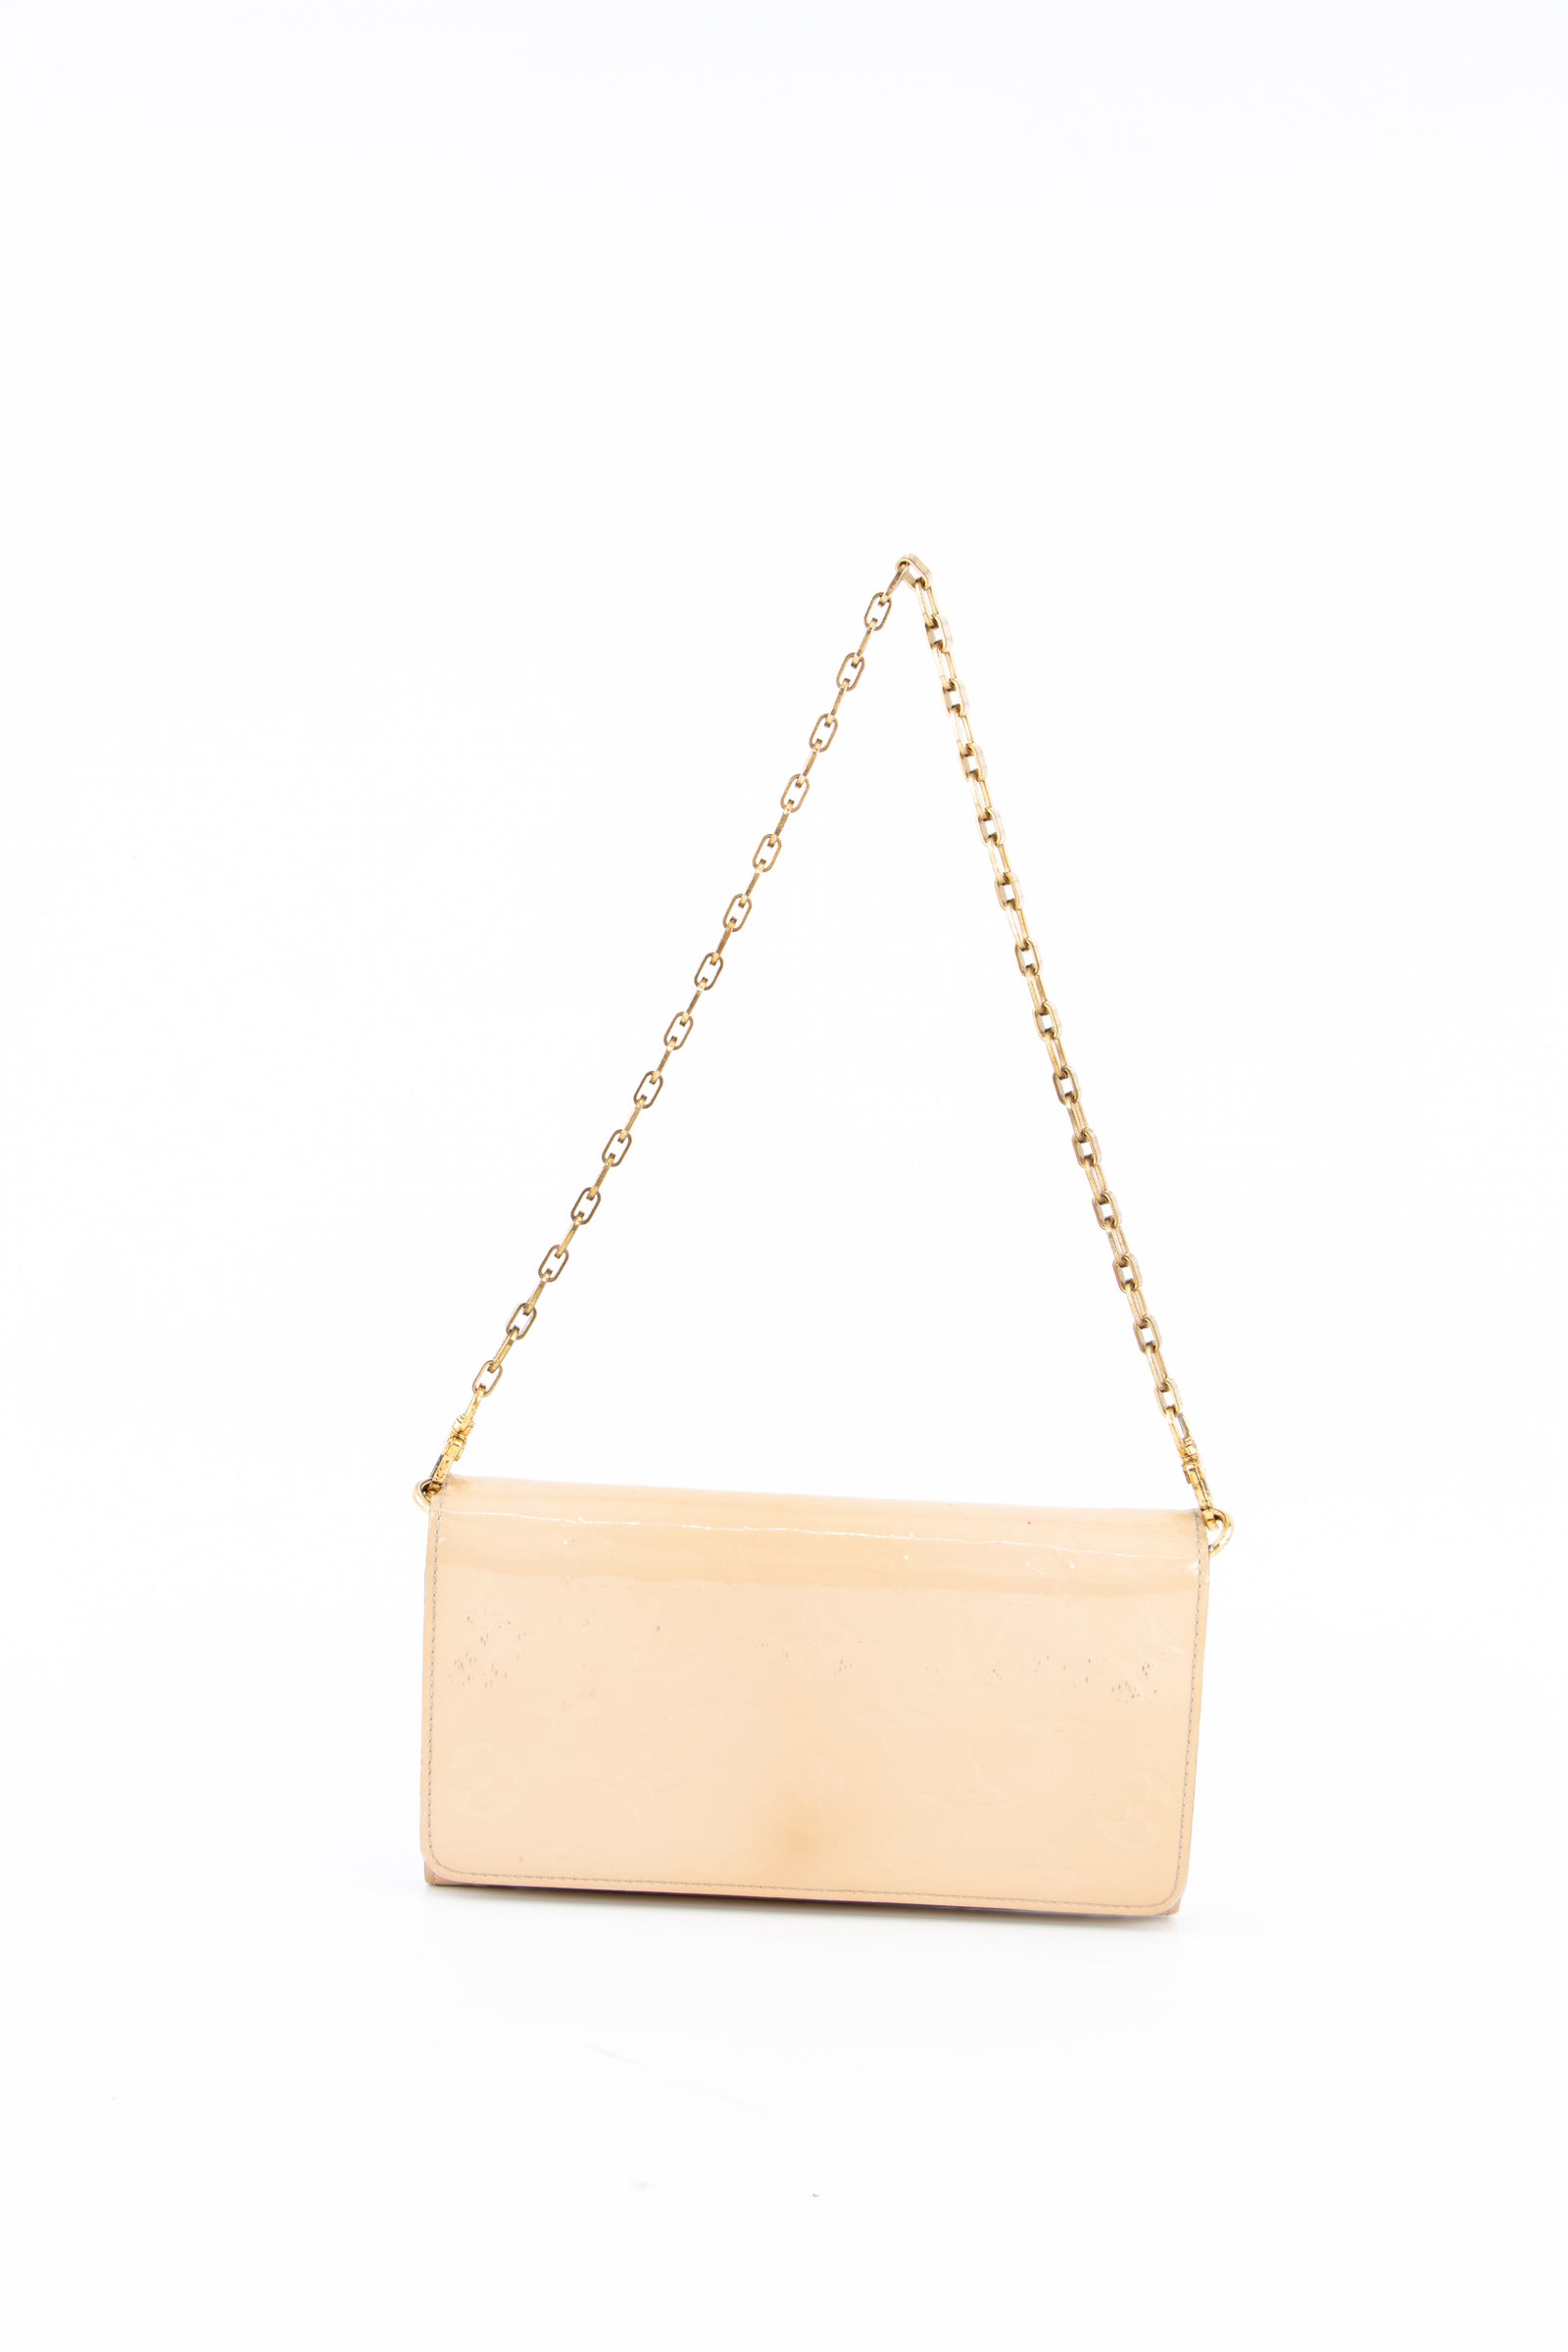 Louis Vuitton Mini Pochette Accessoires Pink Blue Neon Patent Gold Chain  Bag